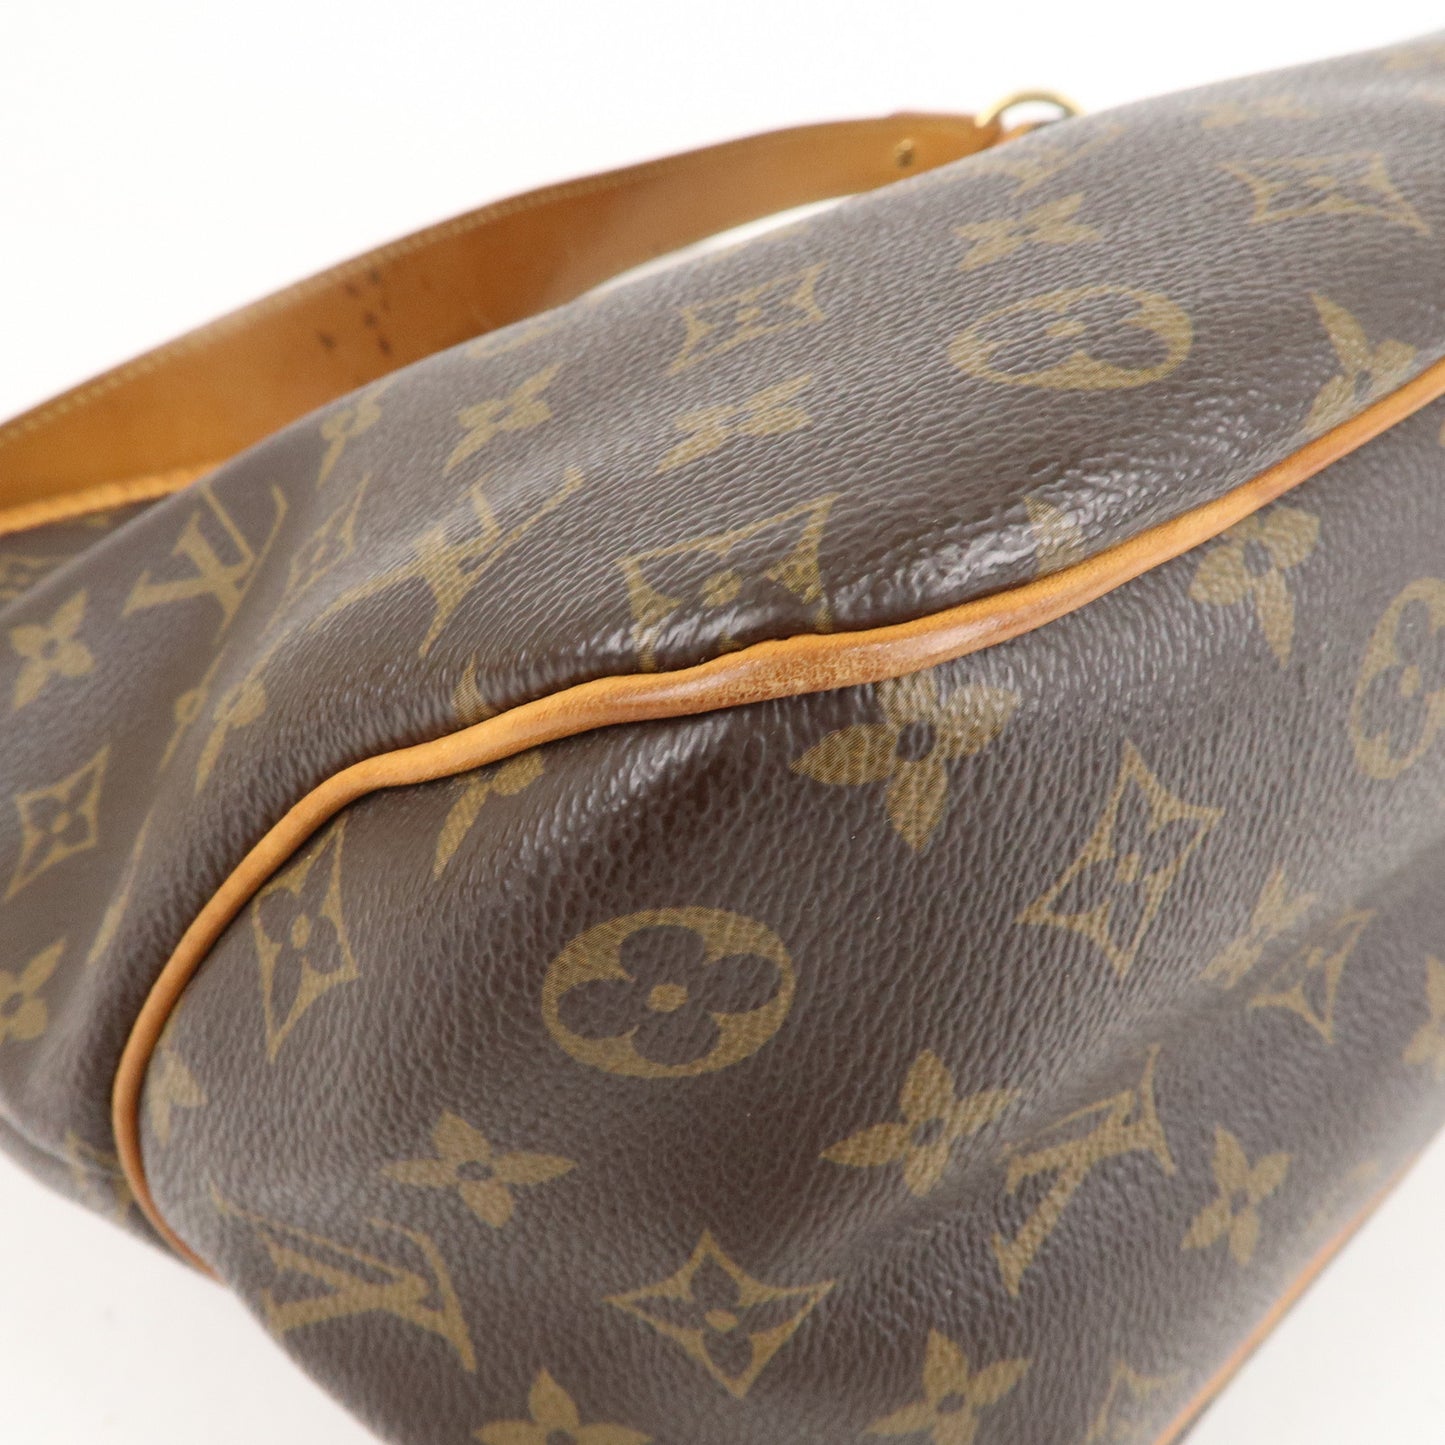 Authentic Louis Vuitton Delightful PM Monogram M40352 Genuine Shoulder Bag  LD368